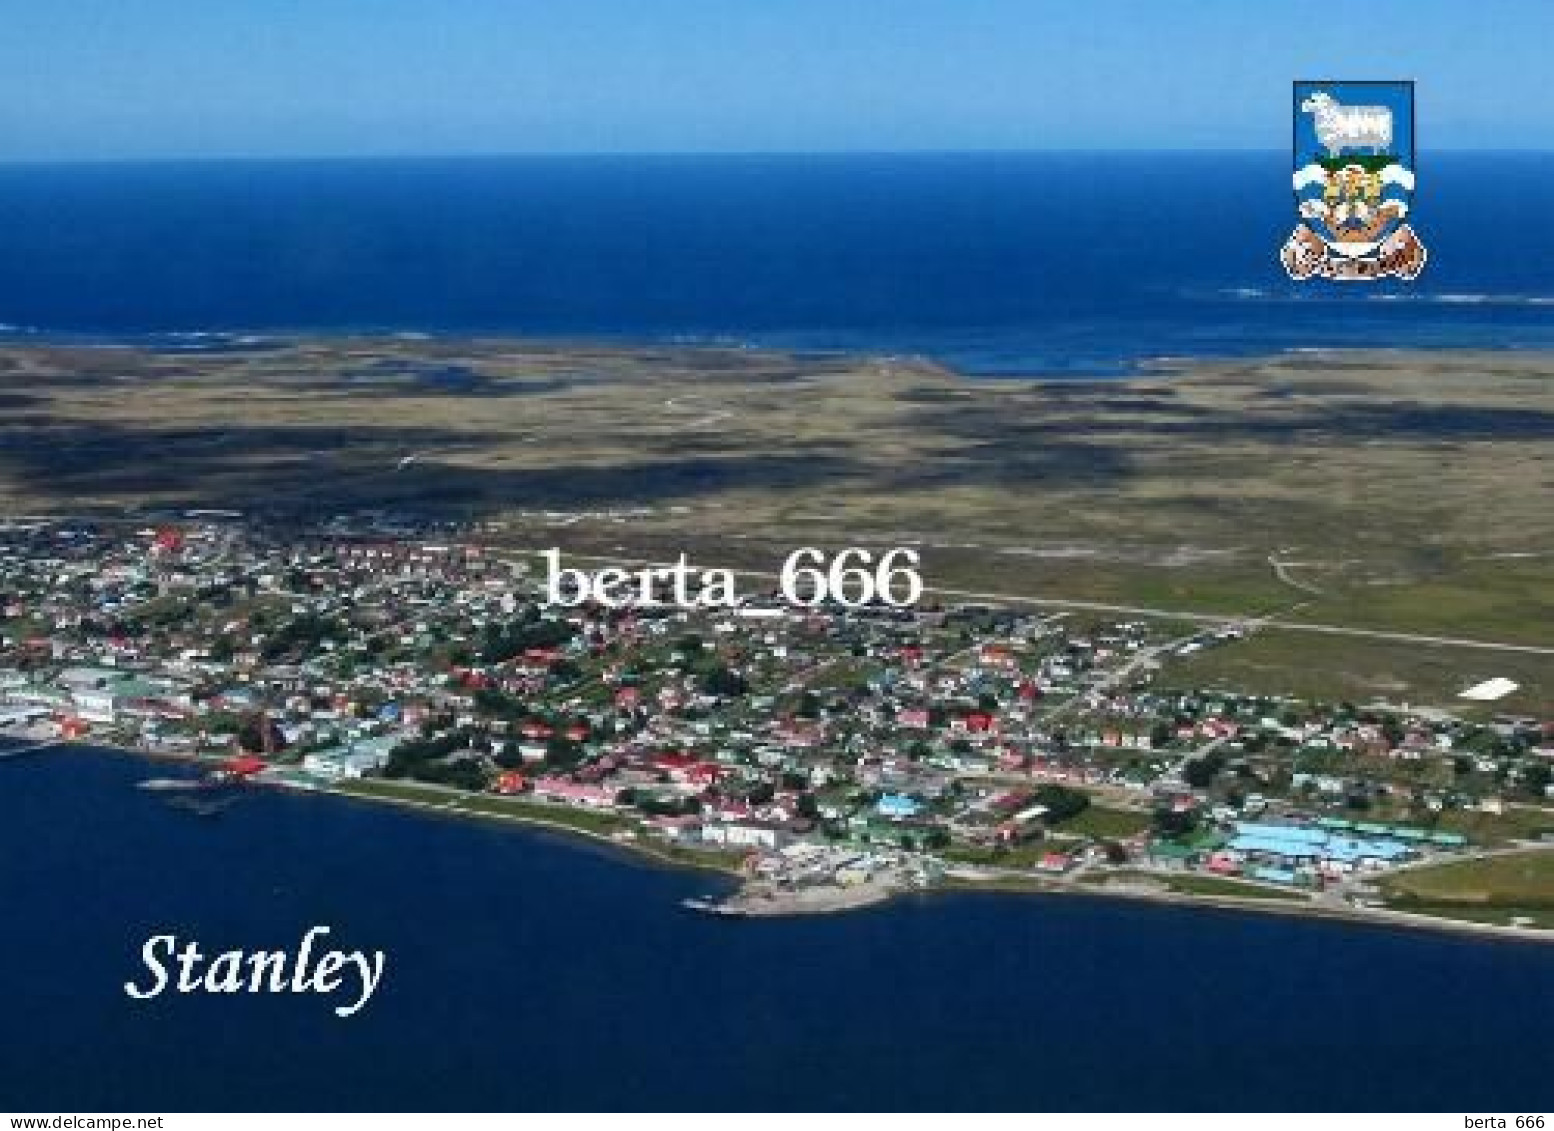 Falklands Islands Stanley Aerial View Malvinas New Postcard - Falkland